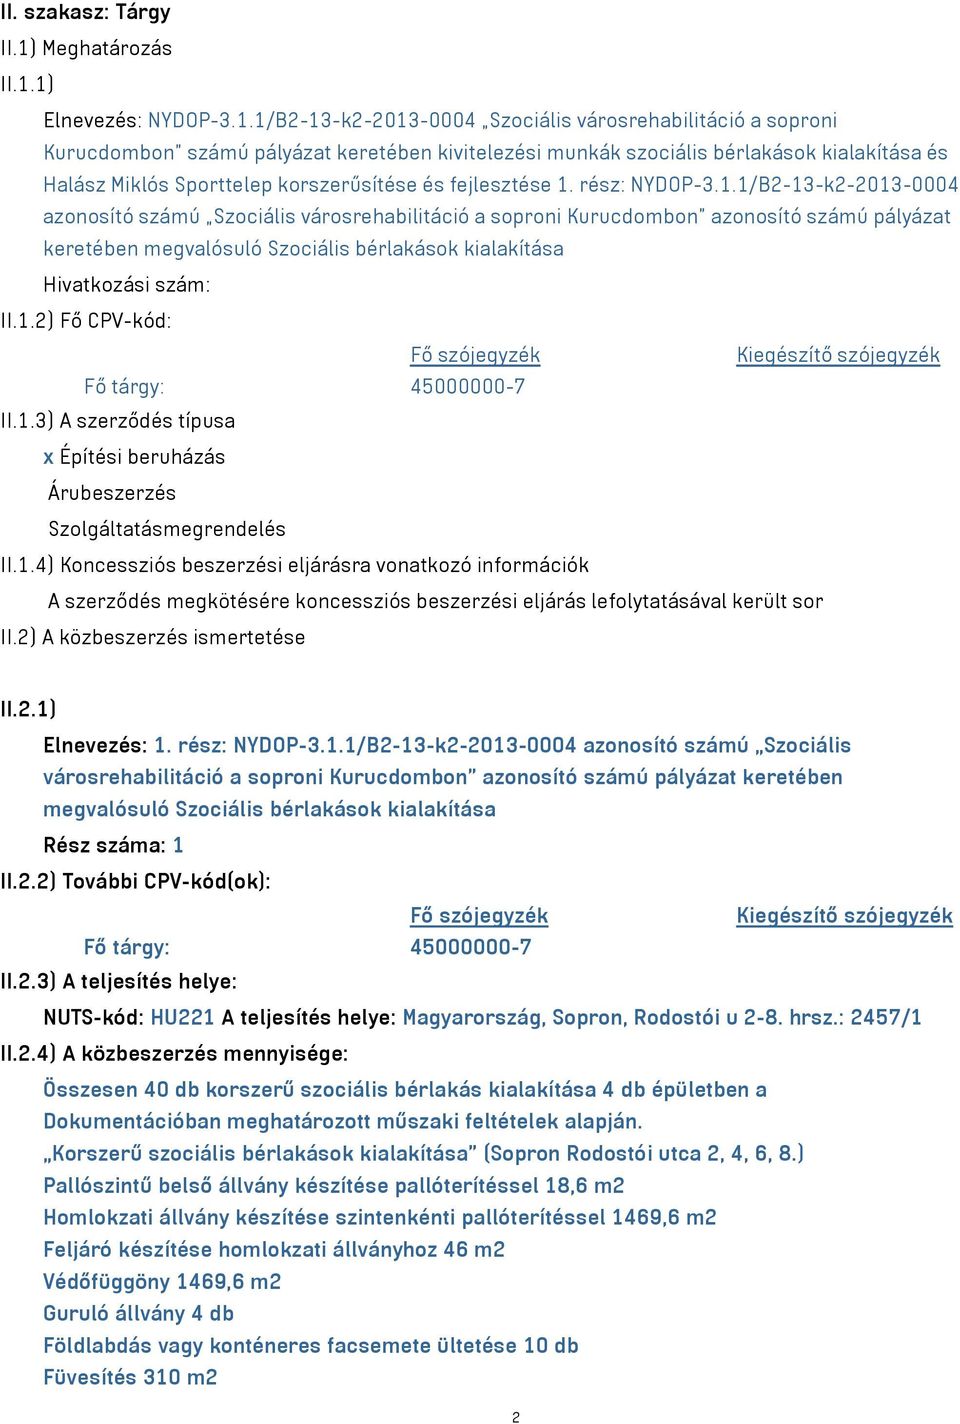 1) Elnevezés: NYDOP-3.1.1/B2-13-k2-2013-0004 Szociális városrehabilitáció a soproni Kurucdombon számú pályázat keretében kivitelezési munkák szociális bérlakások kialakítása és Halász Miklós